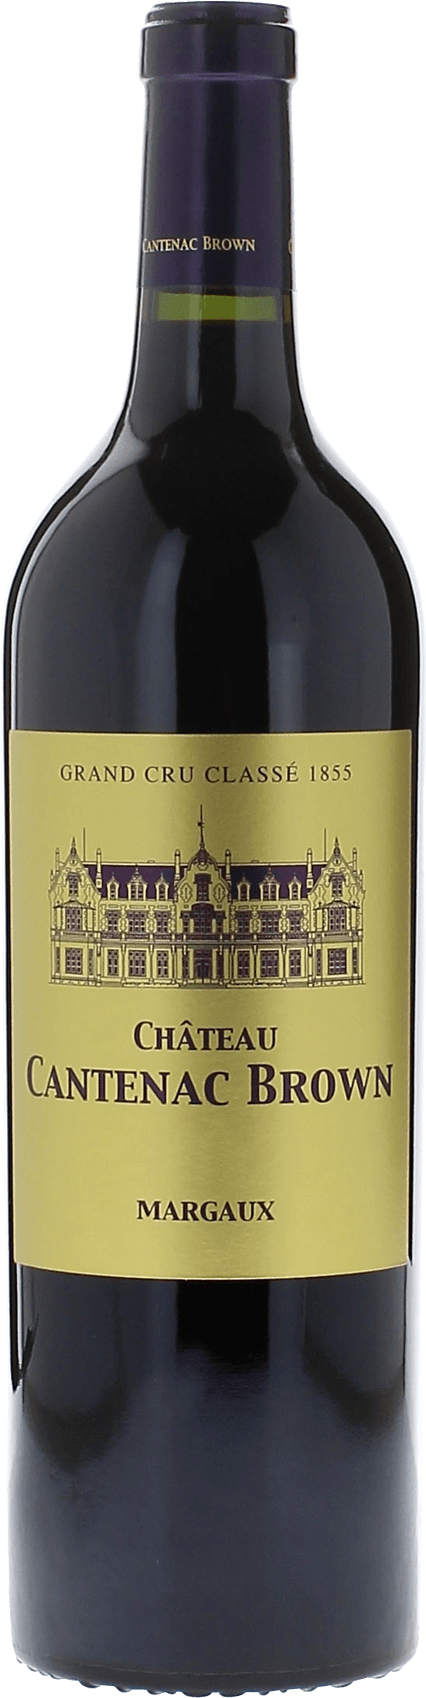 Cantenac brown 2014 2me Grand cru class Margaux, Bordeaux rouge